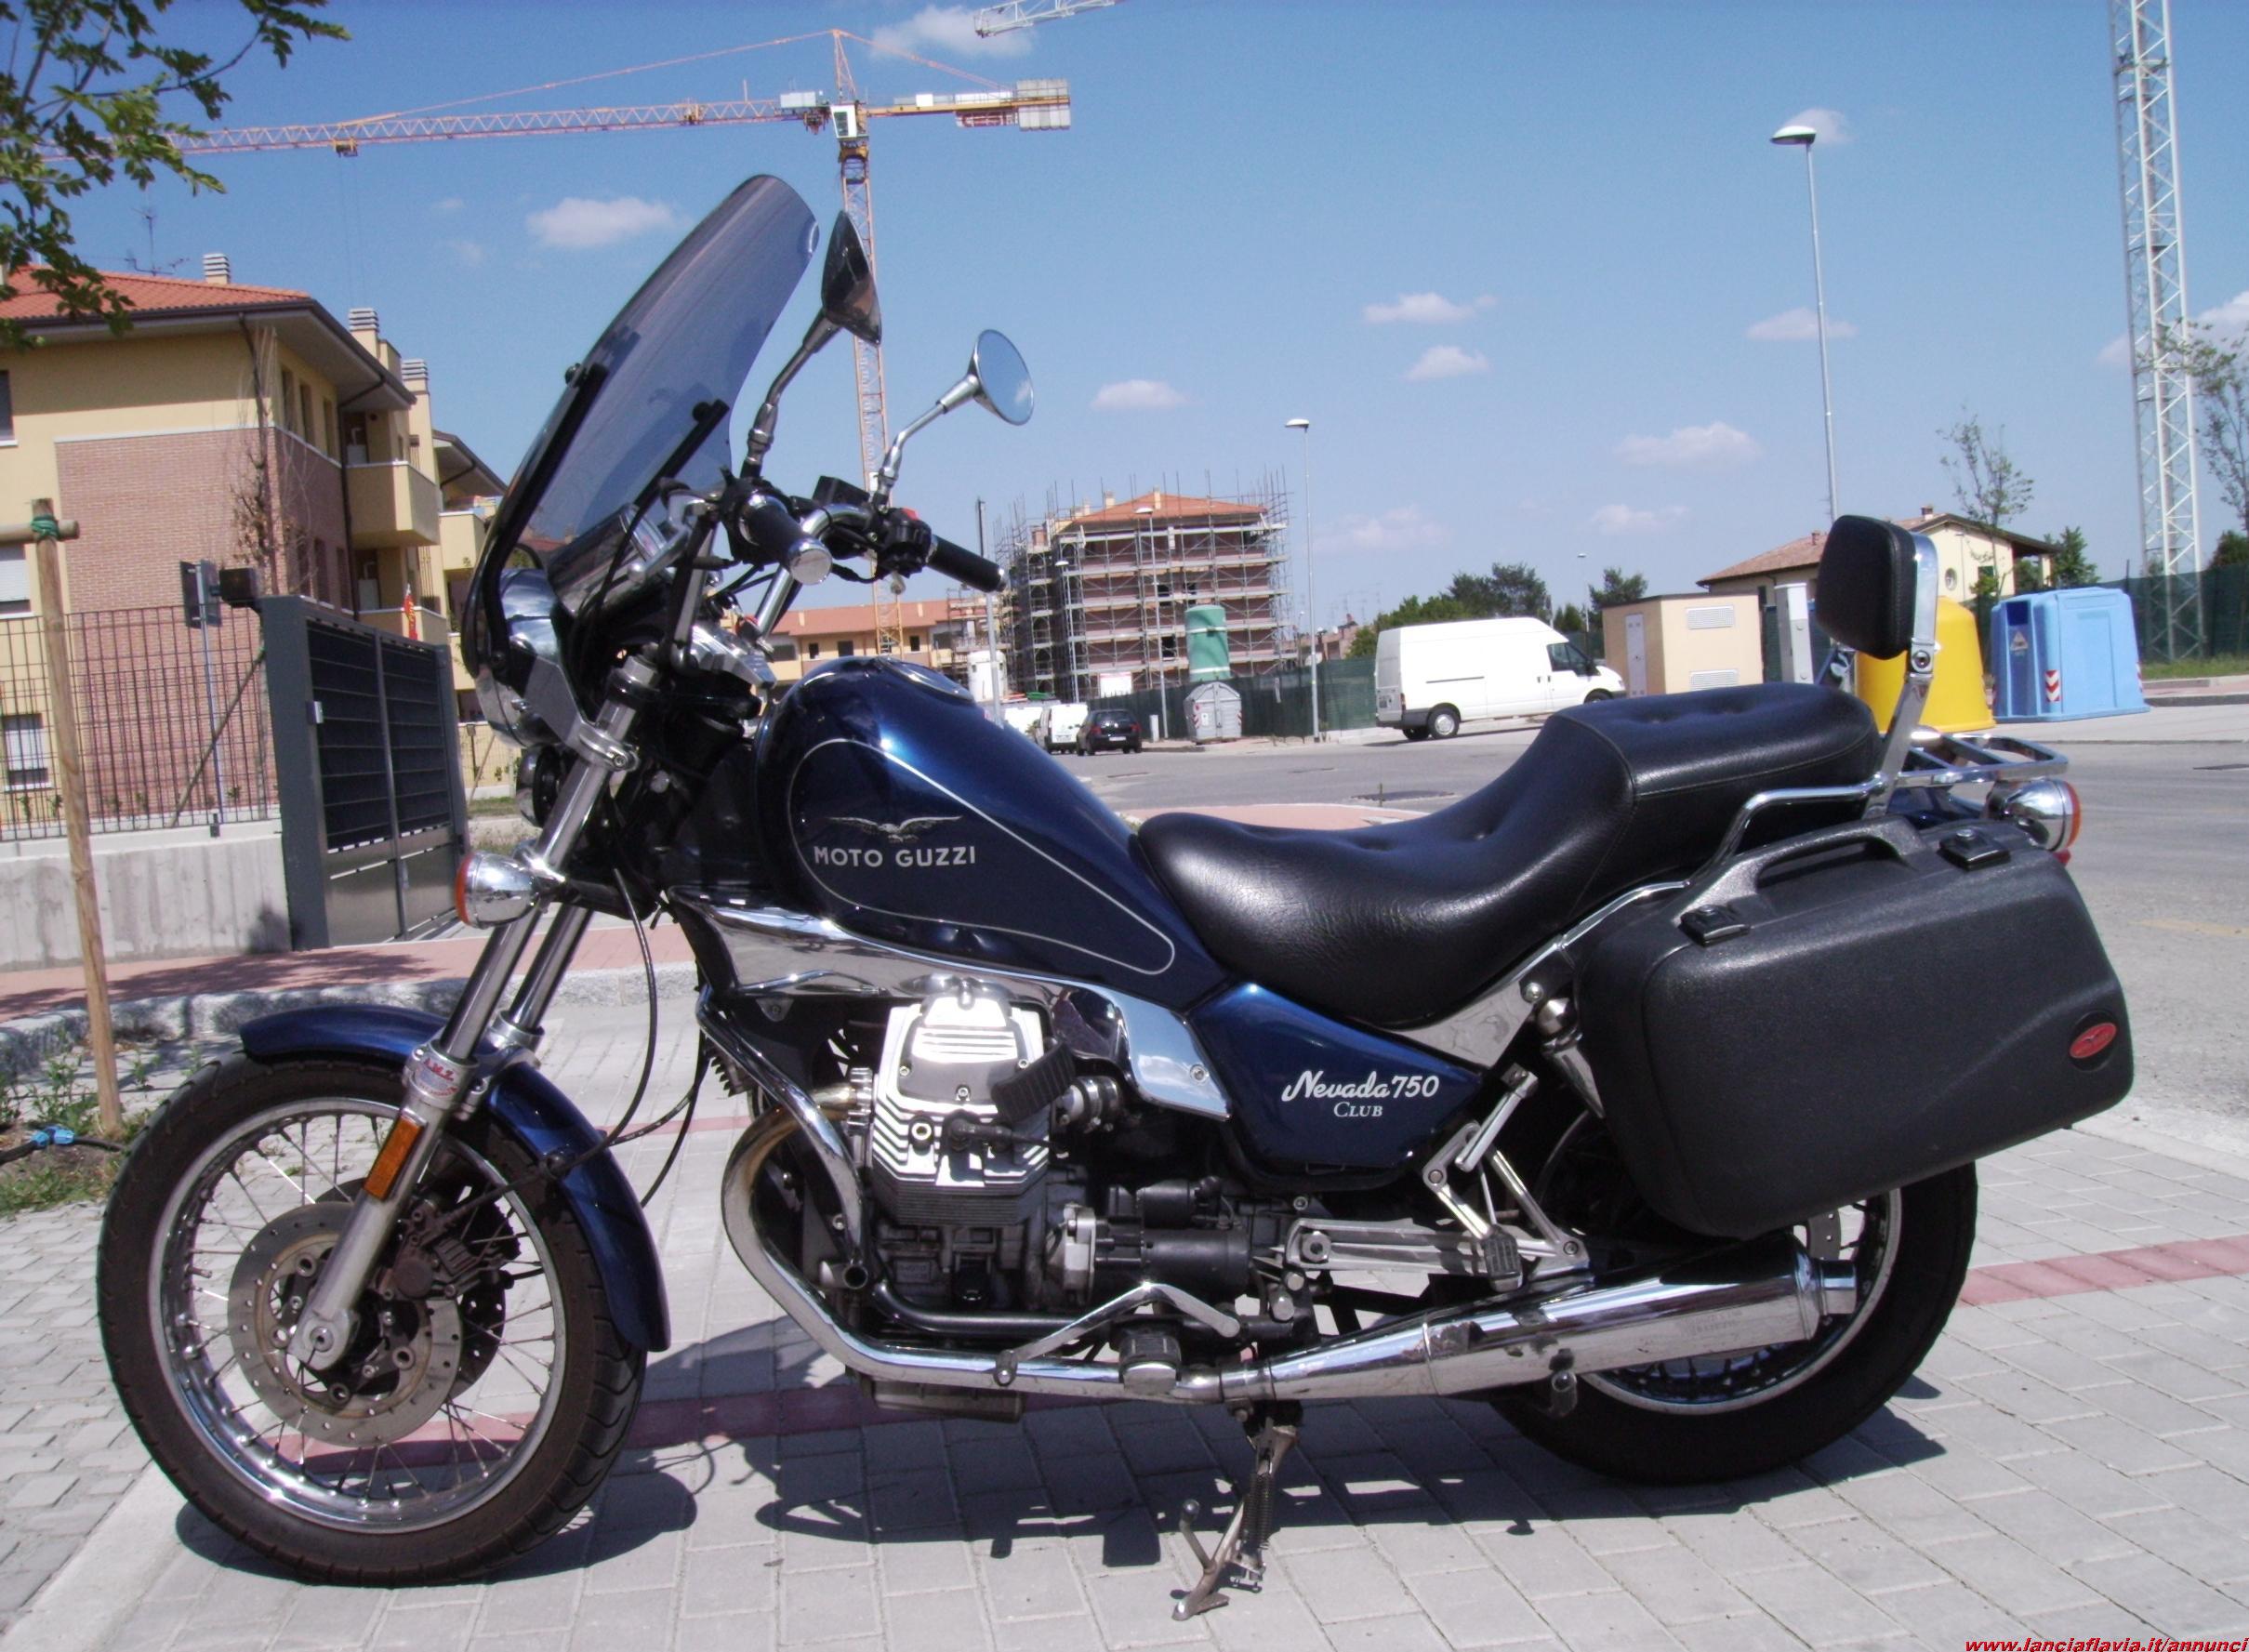 Moto Guzzi Nevada 750 2002 photo - 5